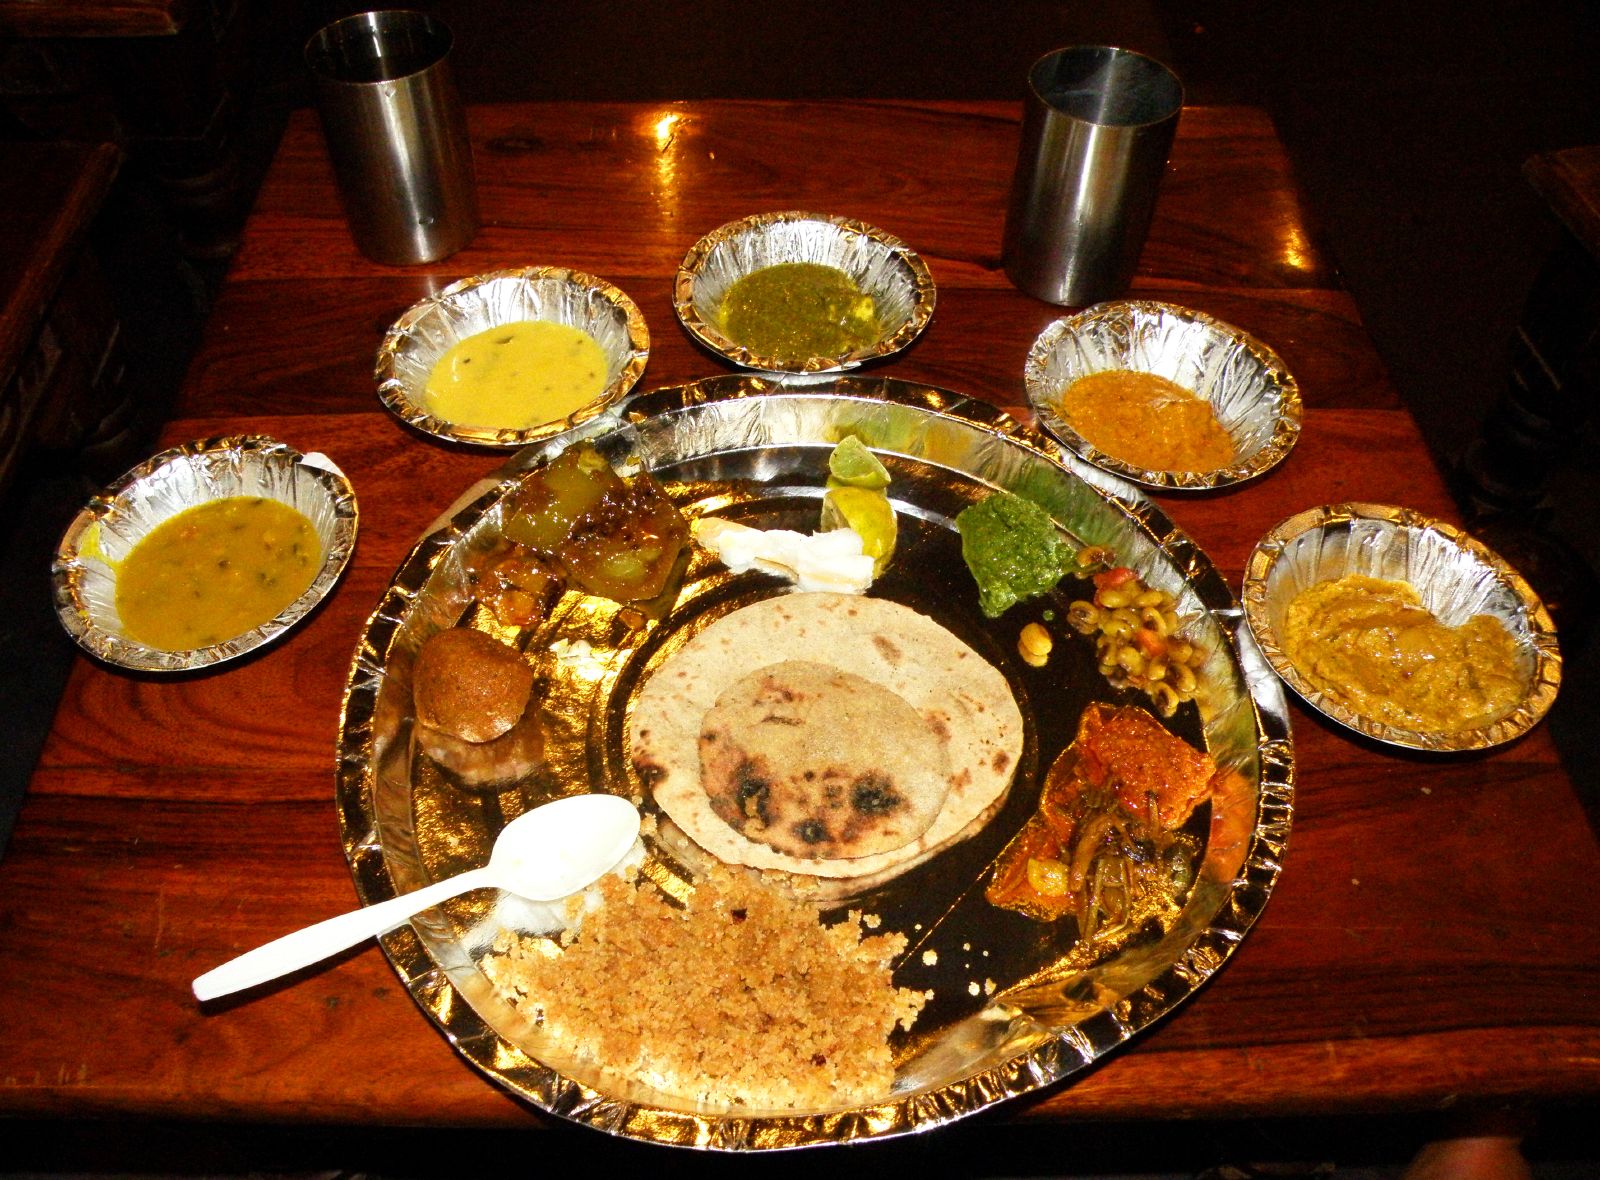 Rajasthani food inJaipur